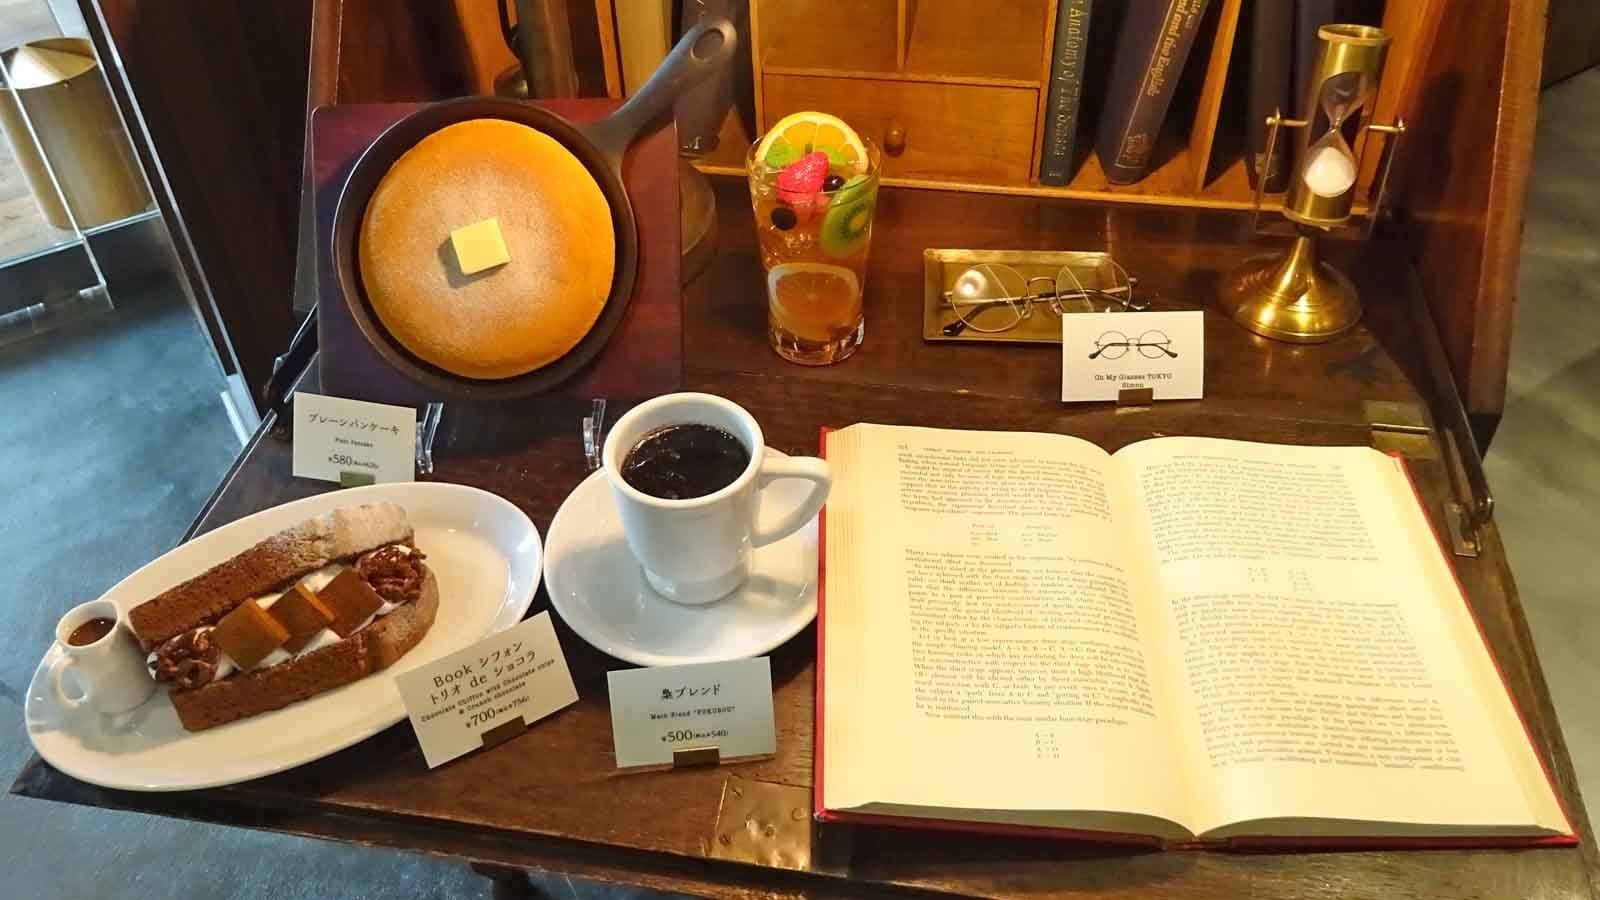 ドトール 3000冊並ぶ 図書館カフェ の全貌 外食 東洋経済オンライン 社会をよくする経済ニュース